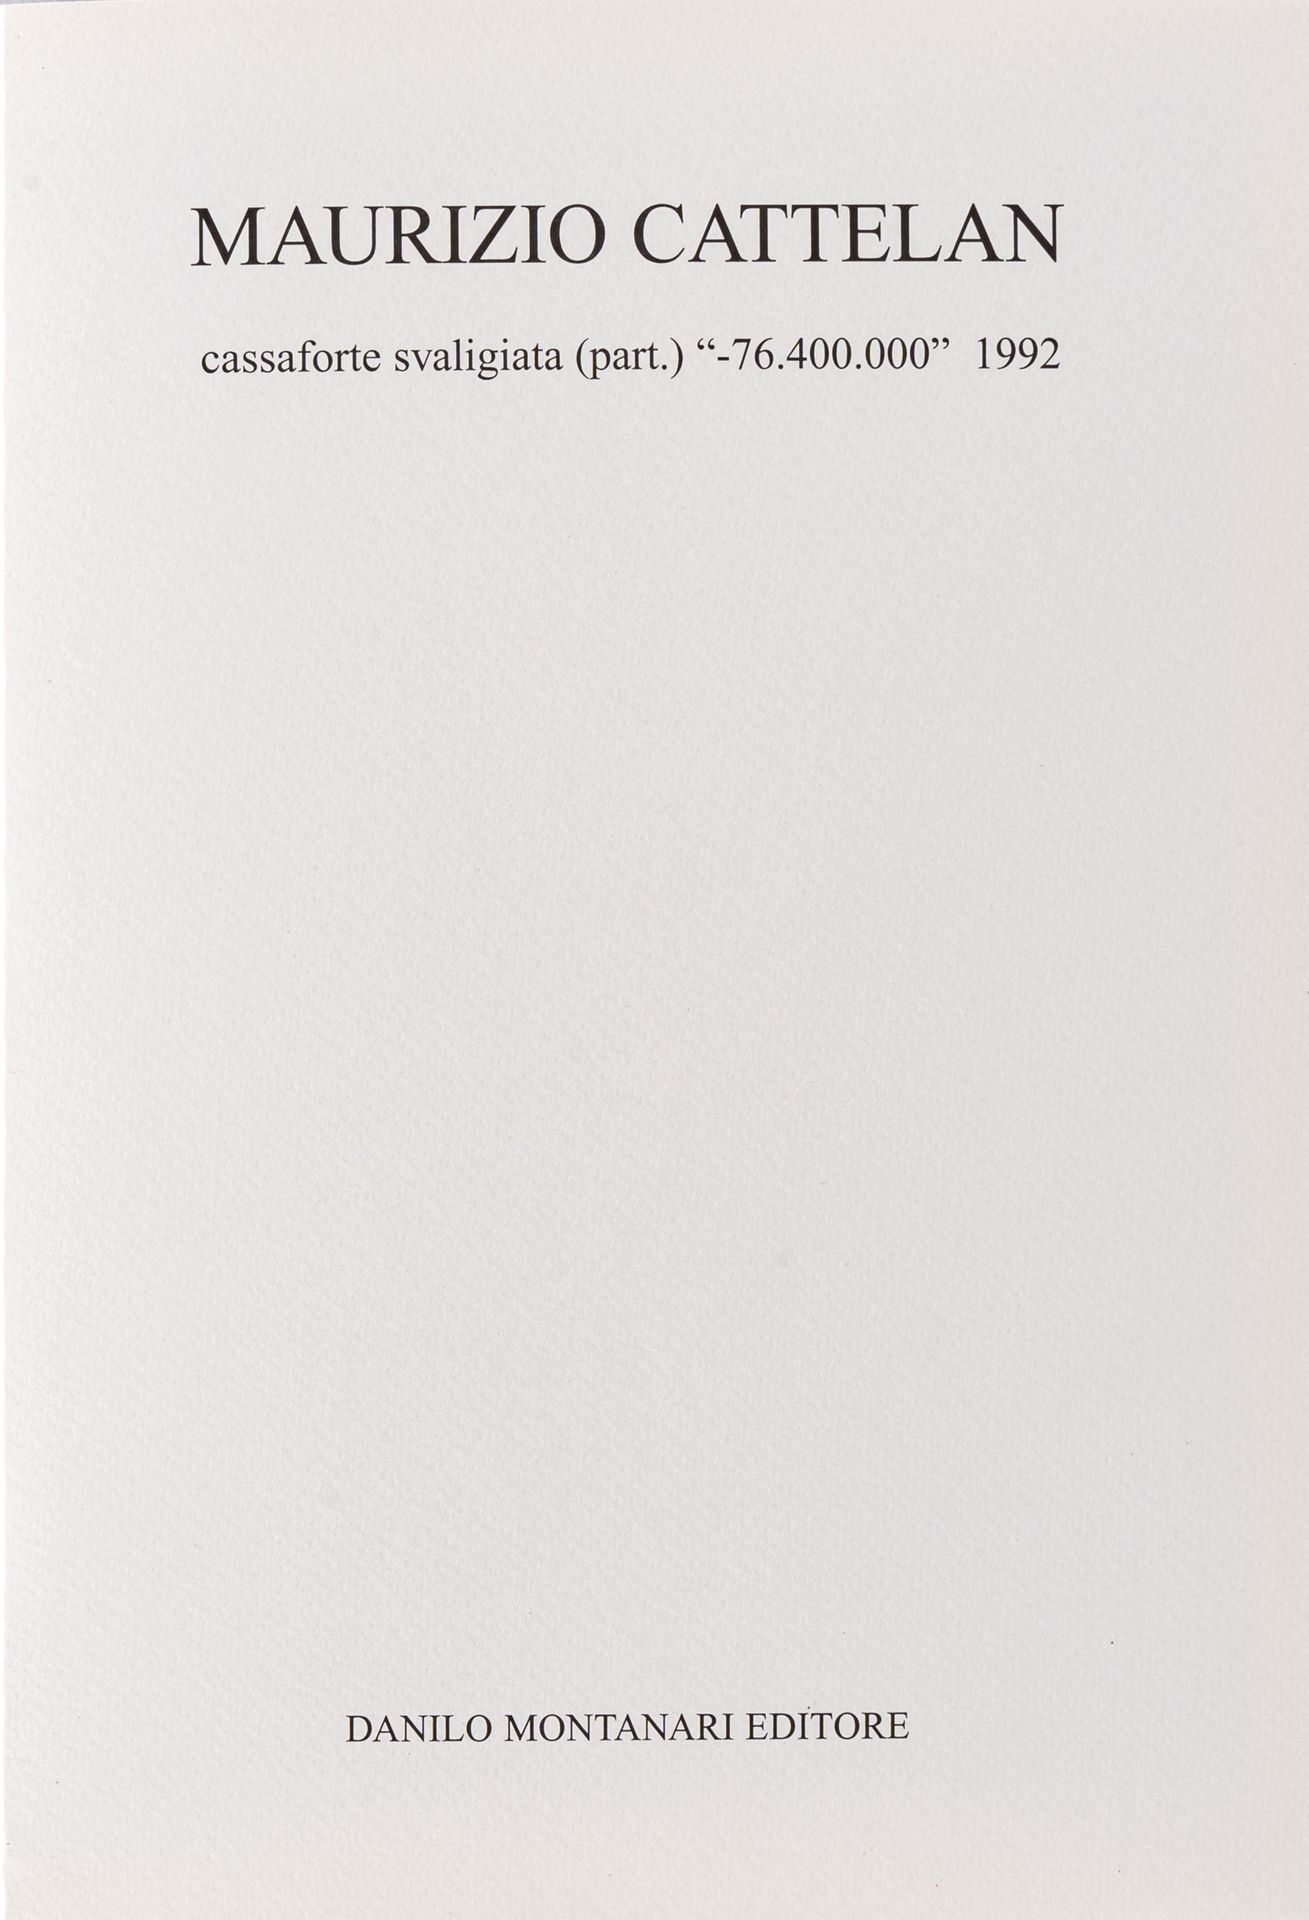 Maurizio Cattelan MAURIZIO CATTELAN

(1960)

-76,400,000 - coffre-fort dévalisé &hellip;